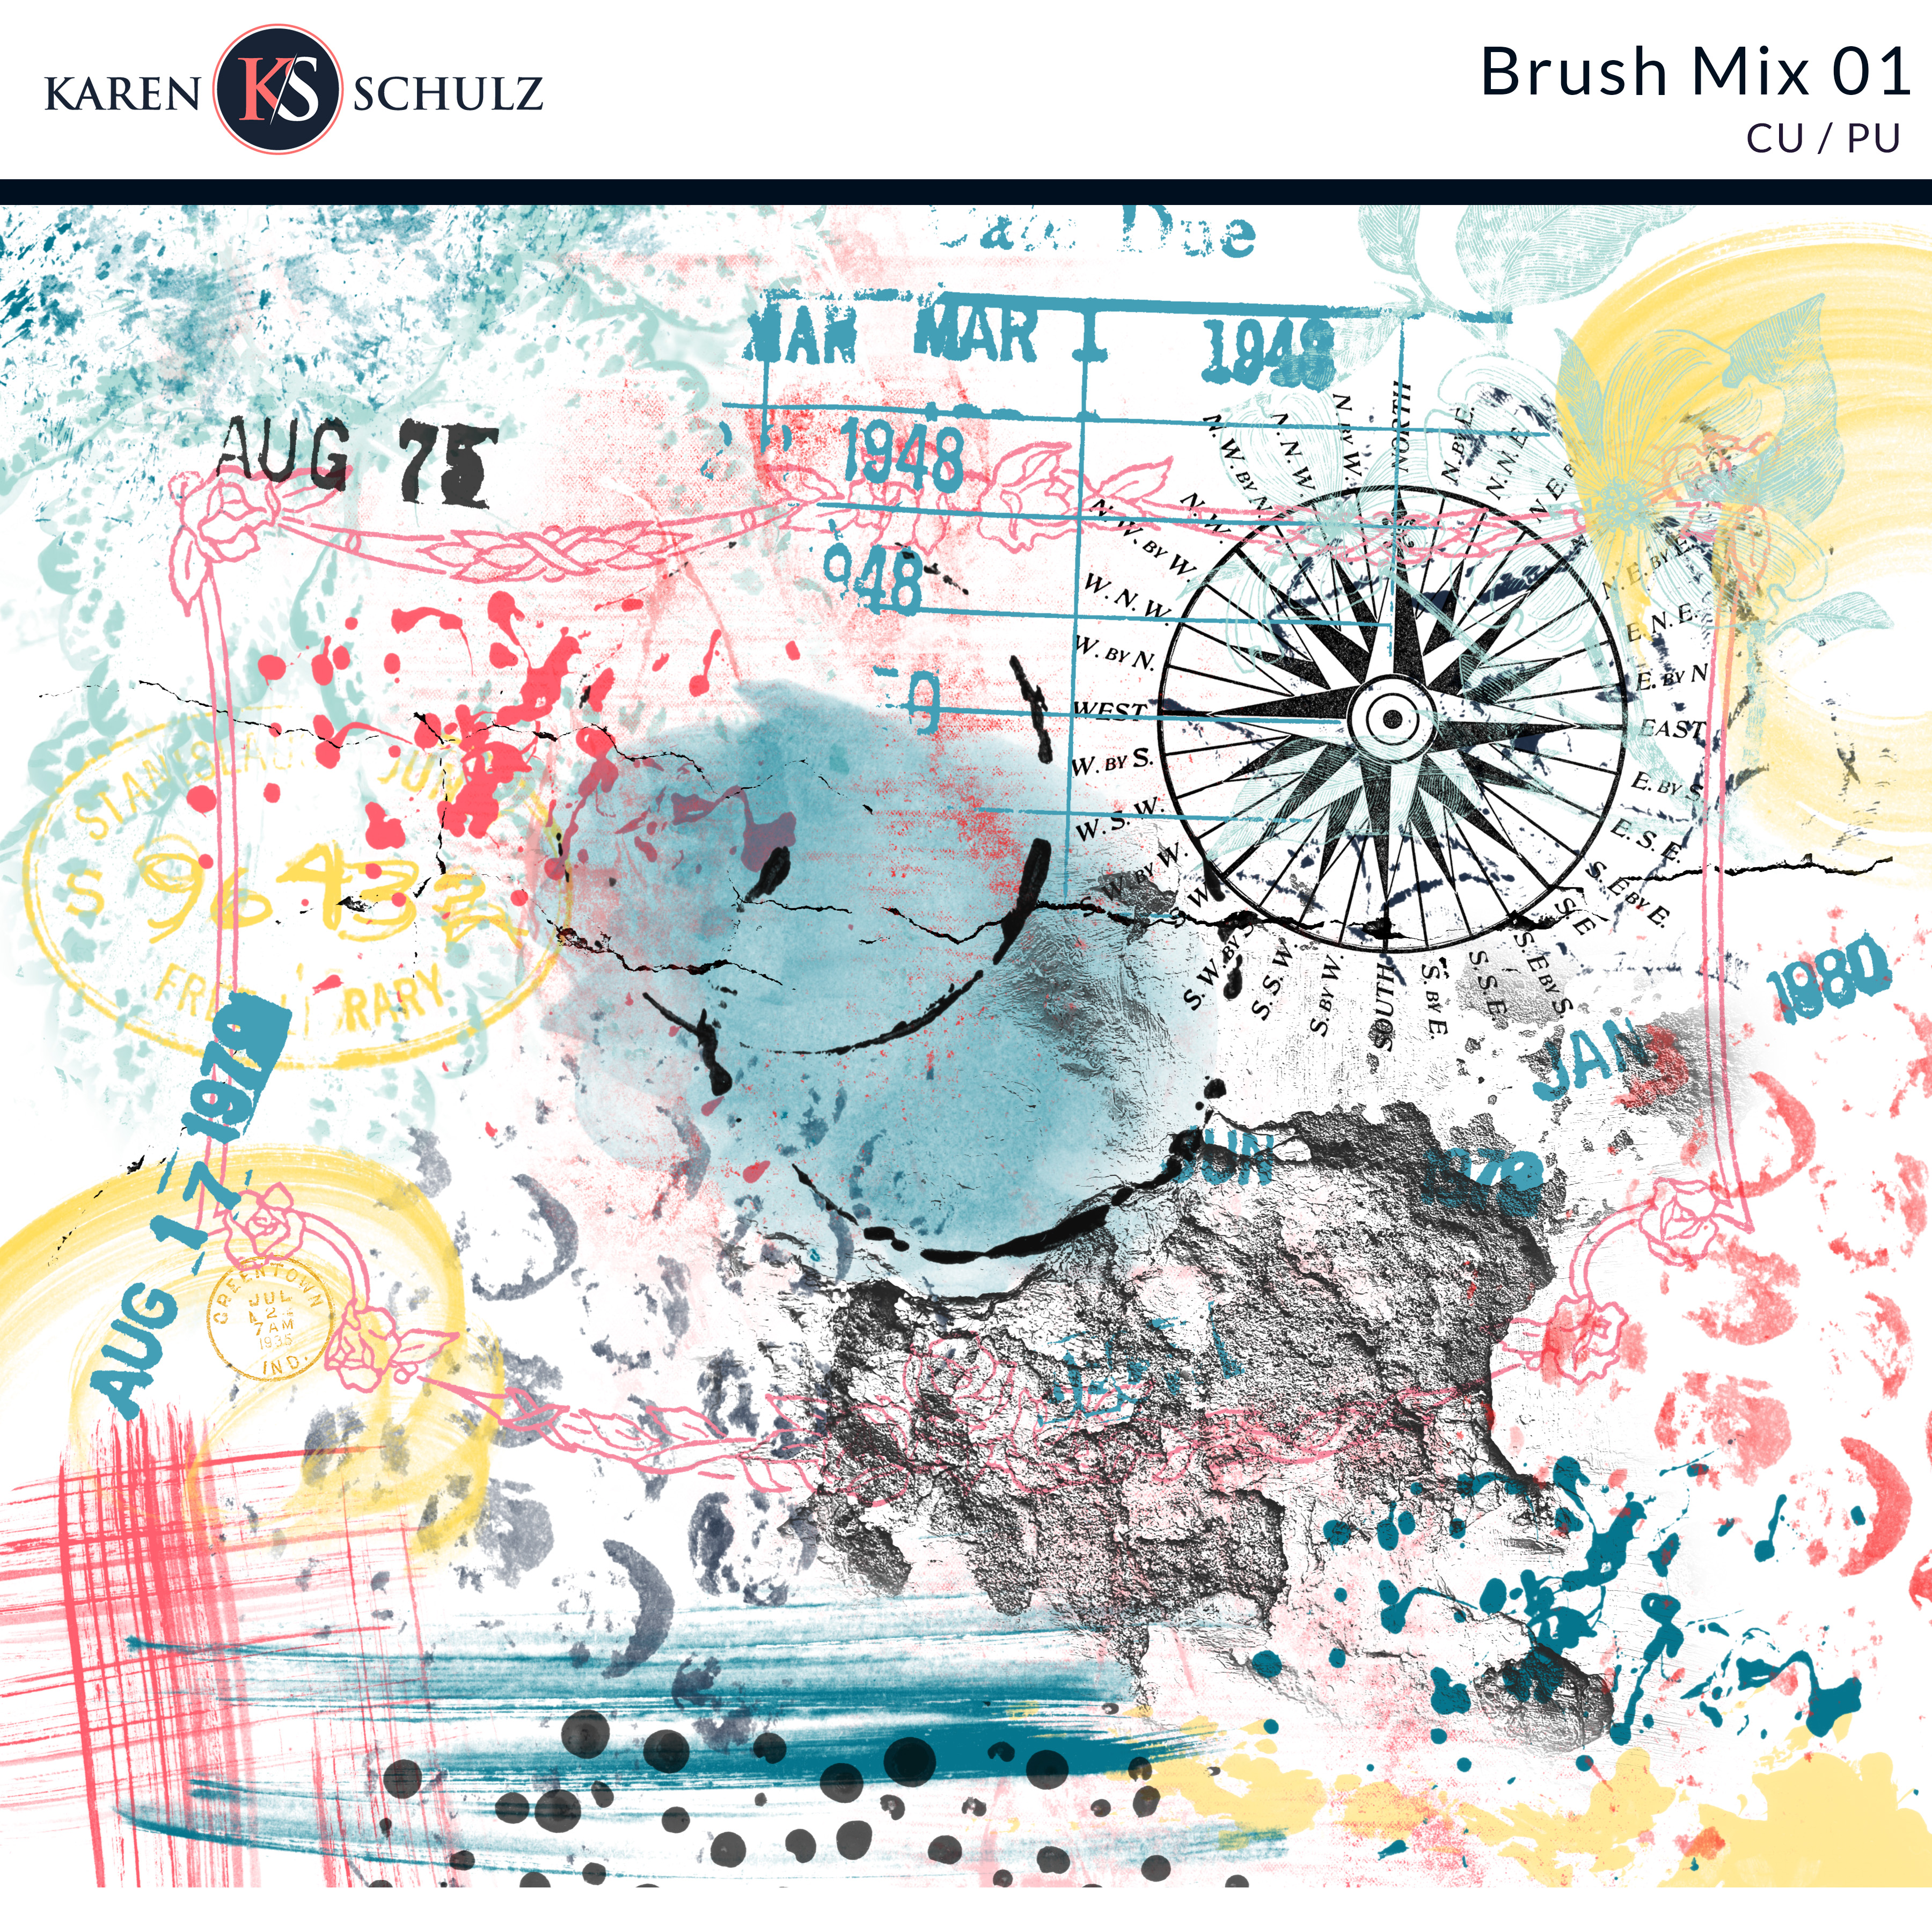 Brush Mix 01 by Karen Schulz